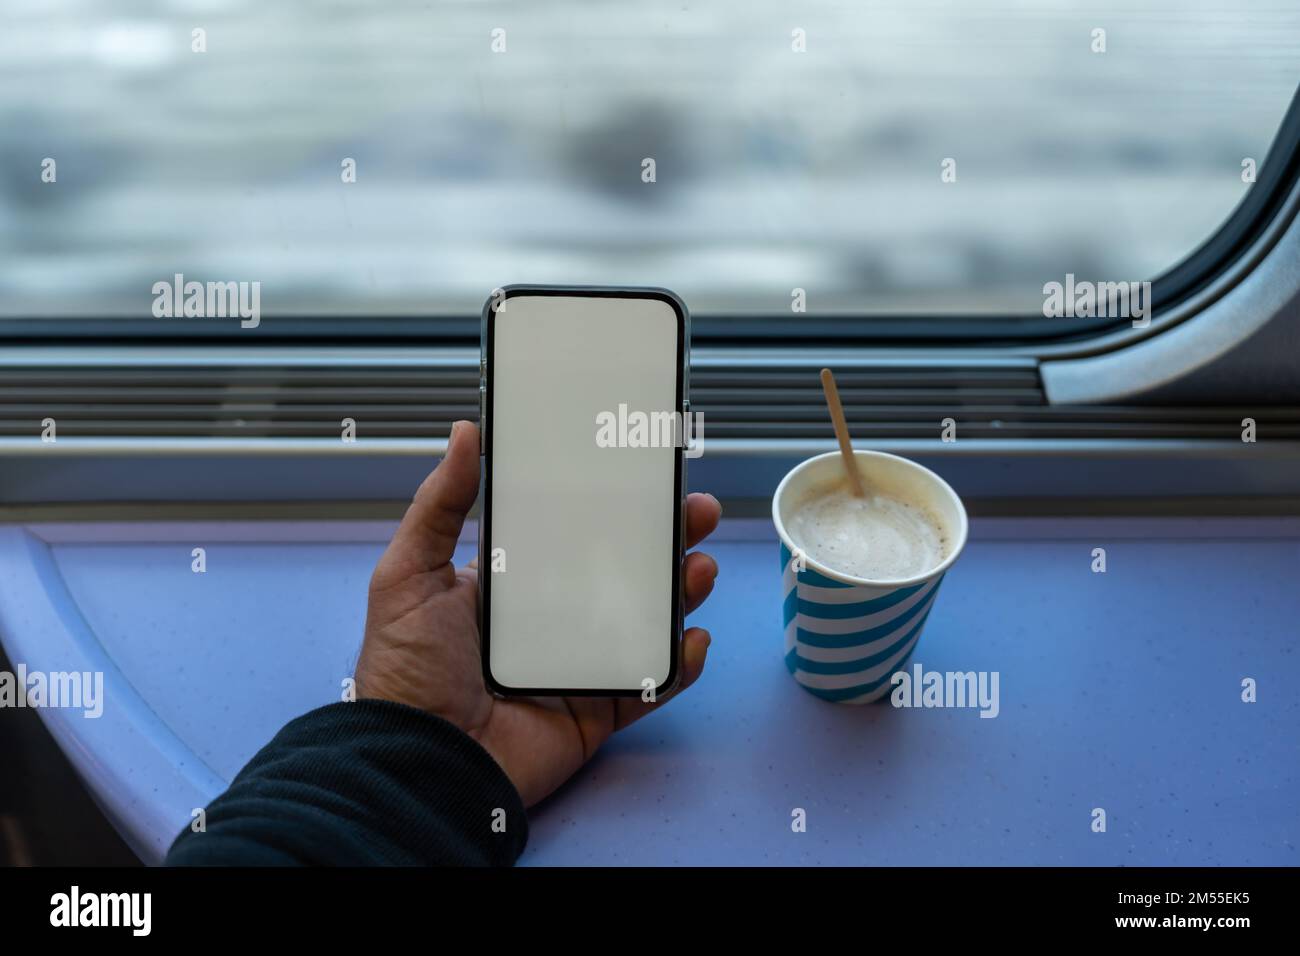 Depuis le dessus, les passagers anonymes naviguent sur un smartphone avec un écran vide près d'une tasse de café contre la fenêtre du train pendant le voyage Banque D'Images